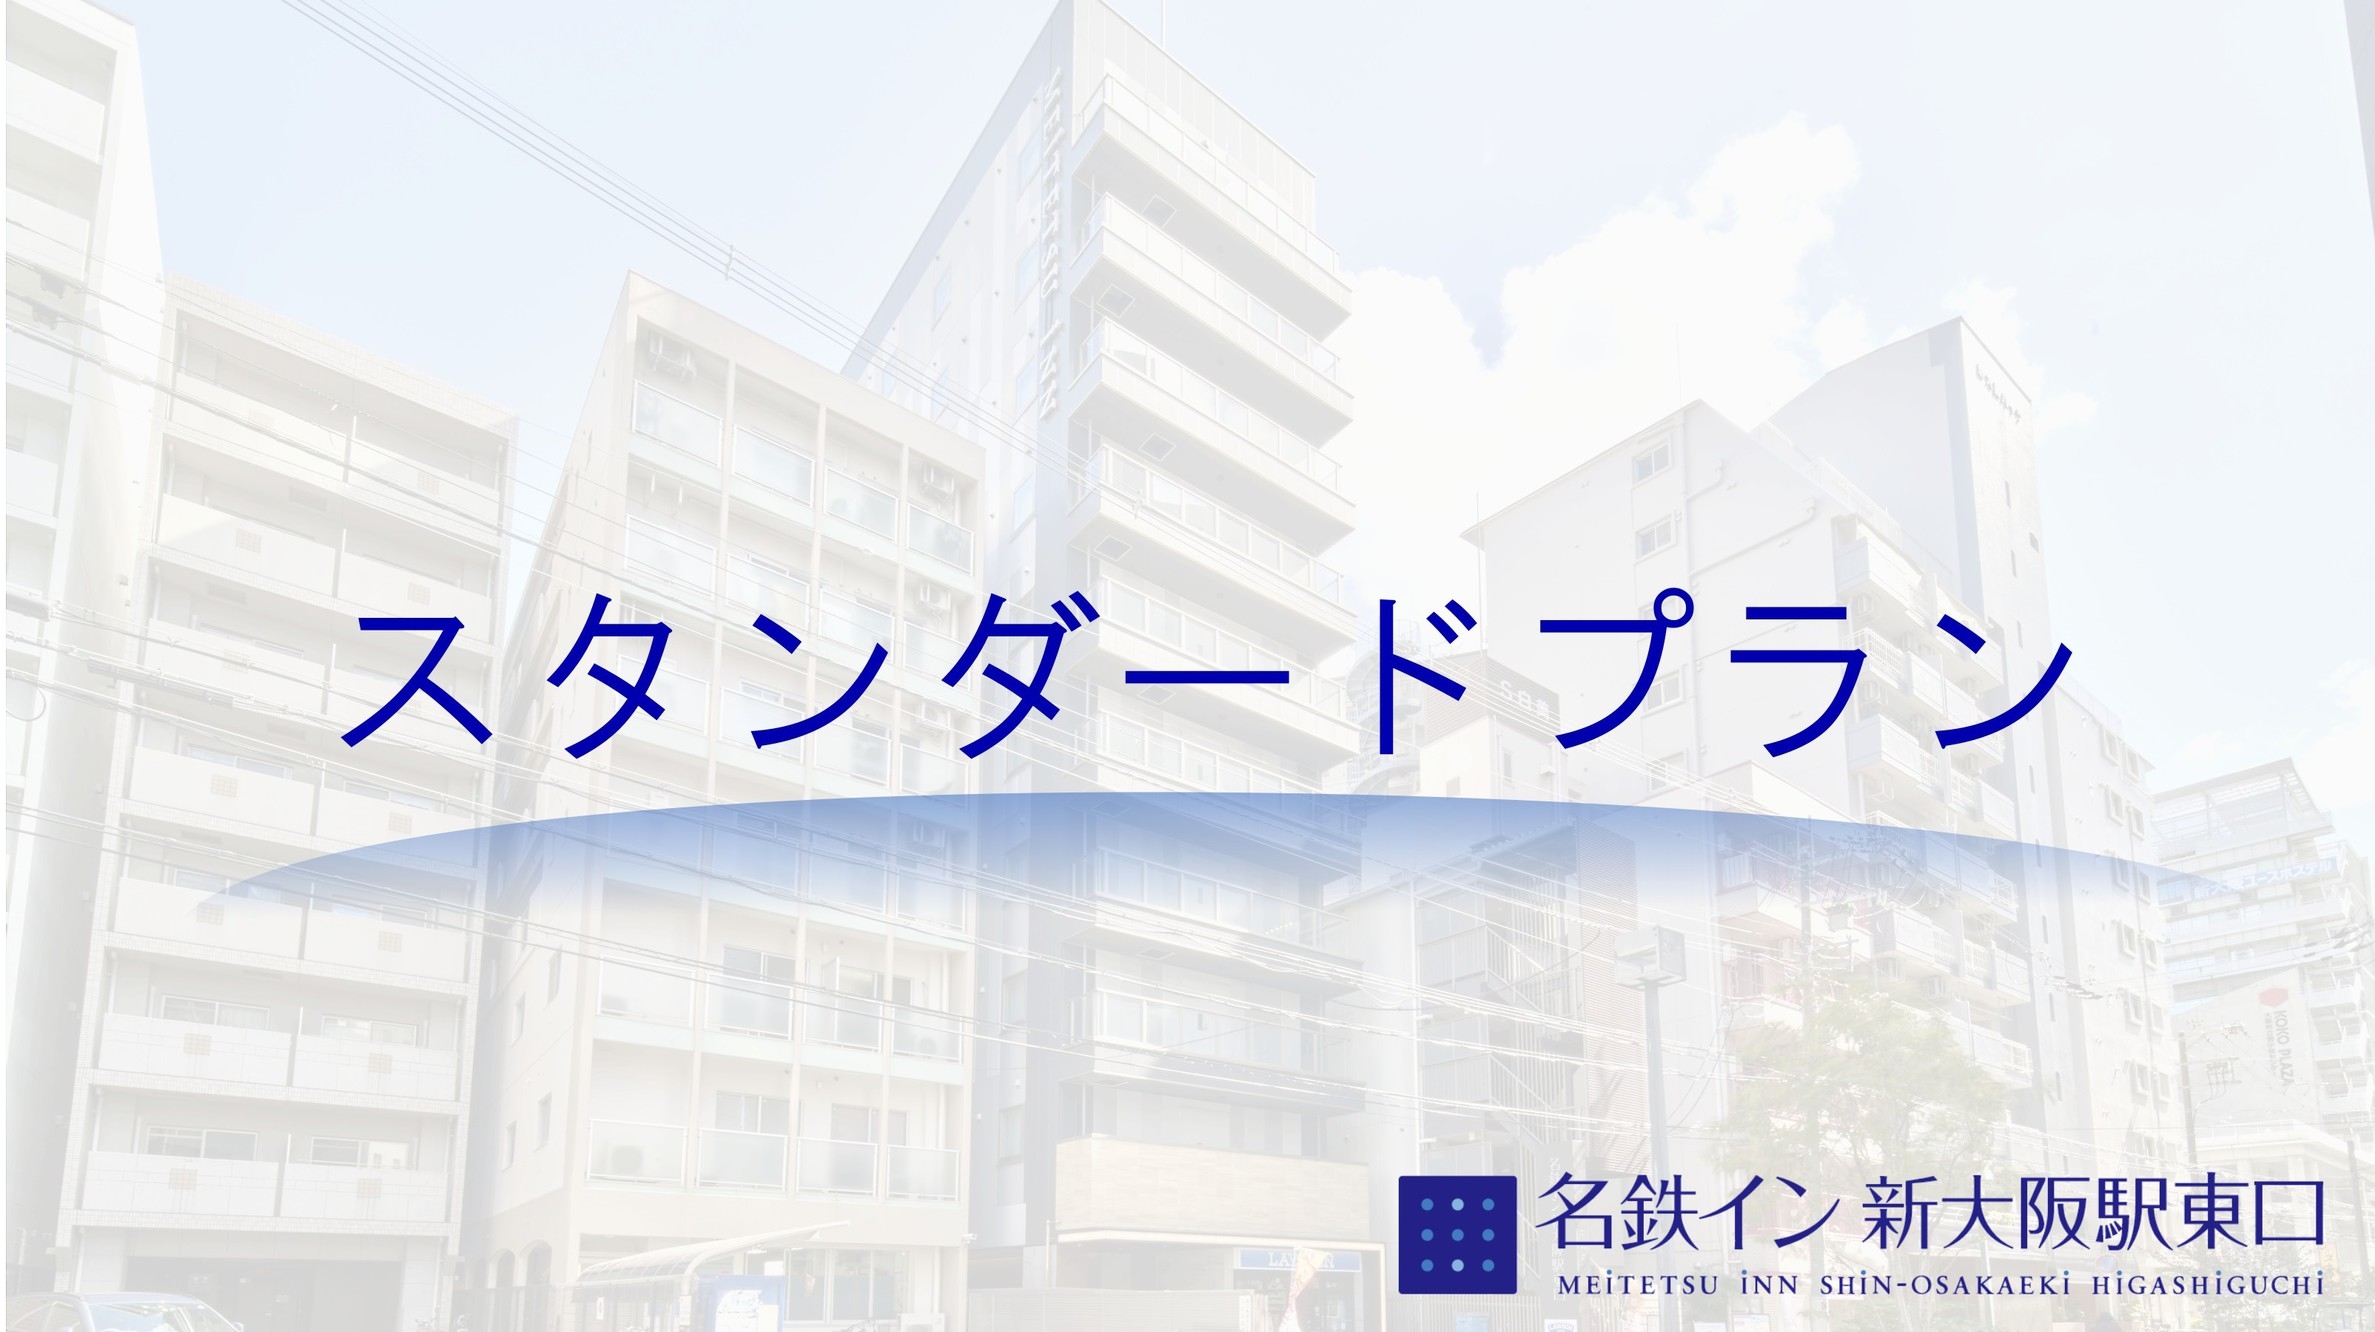 【スタンダードプラン】大阪旅行を素敵な旅へ♪2020年6月21日オープンのデザイナーズホテル